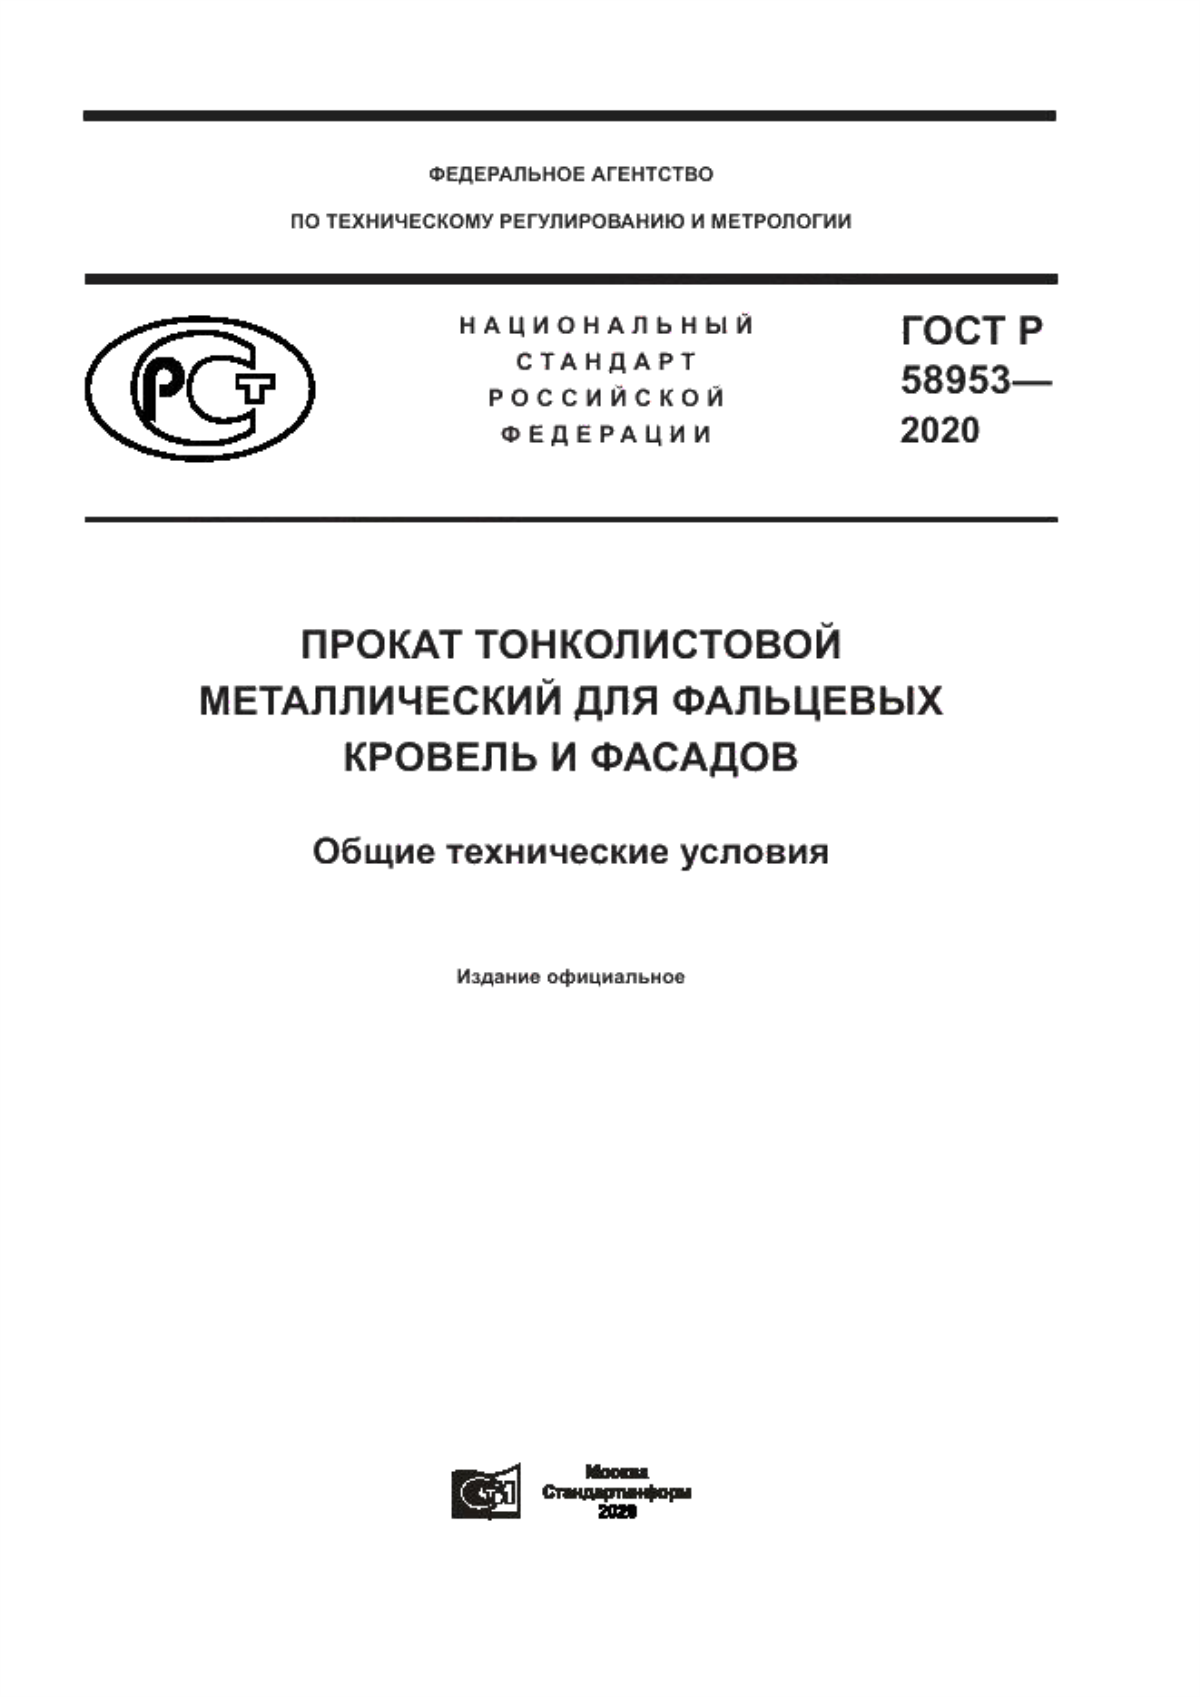 ГОСТ Р 58953-2020 Прокат тонколистовой металлический для фальцевых кровель и фасадов. Общие технические условия